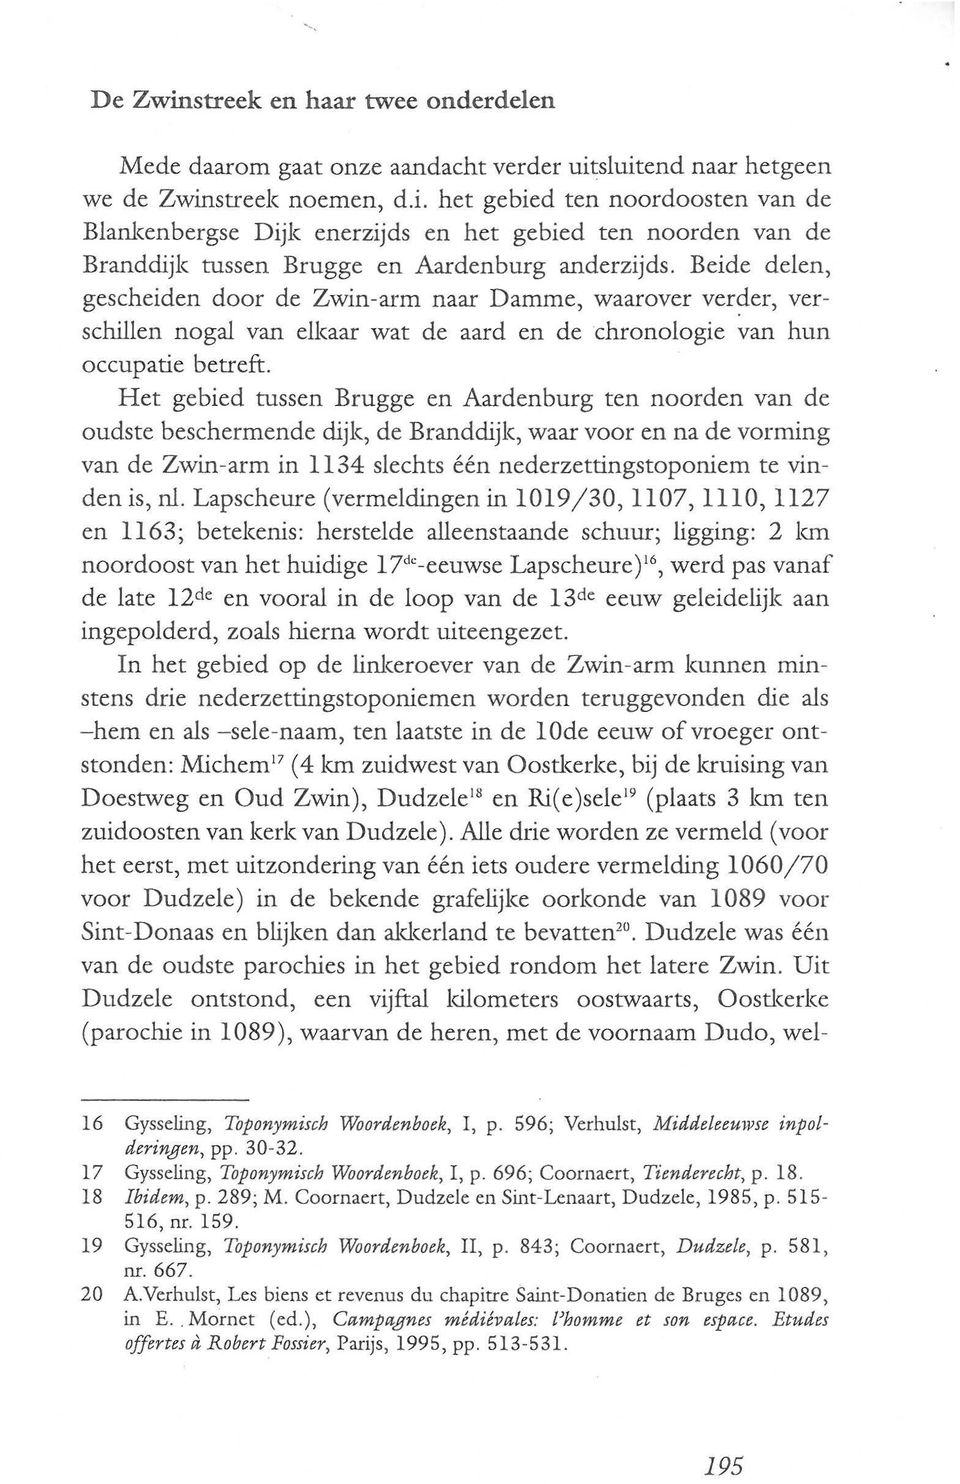 Het gebied tussen Brugge en Aardenburg ten noorden van de oudste beschermende dijk, de Branddijk, waar voor en na de vorming van de Zwin-arm in 1134 slechts één nederzettingstoponiem te vinden is, nl.